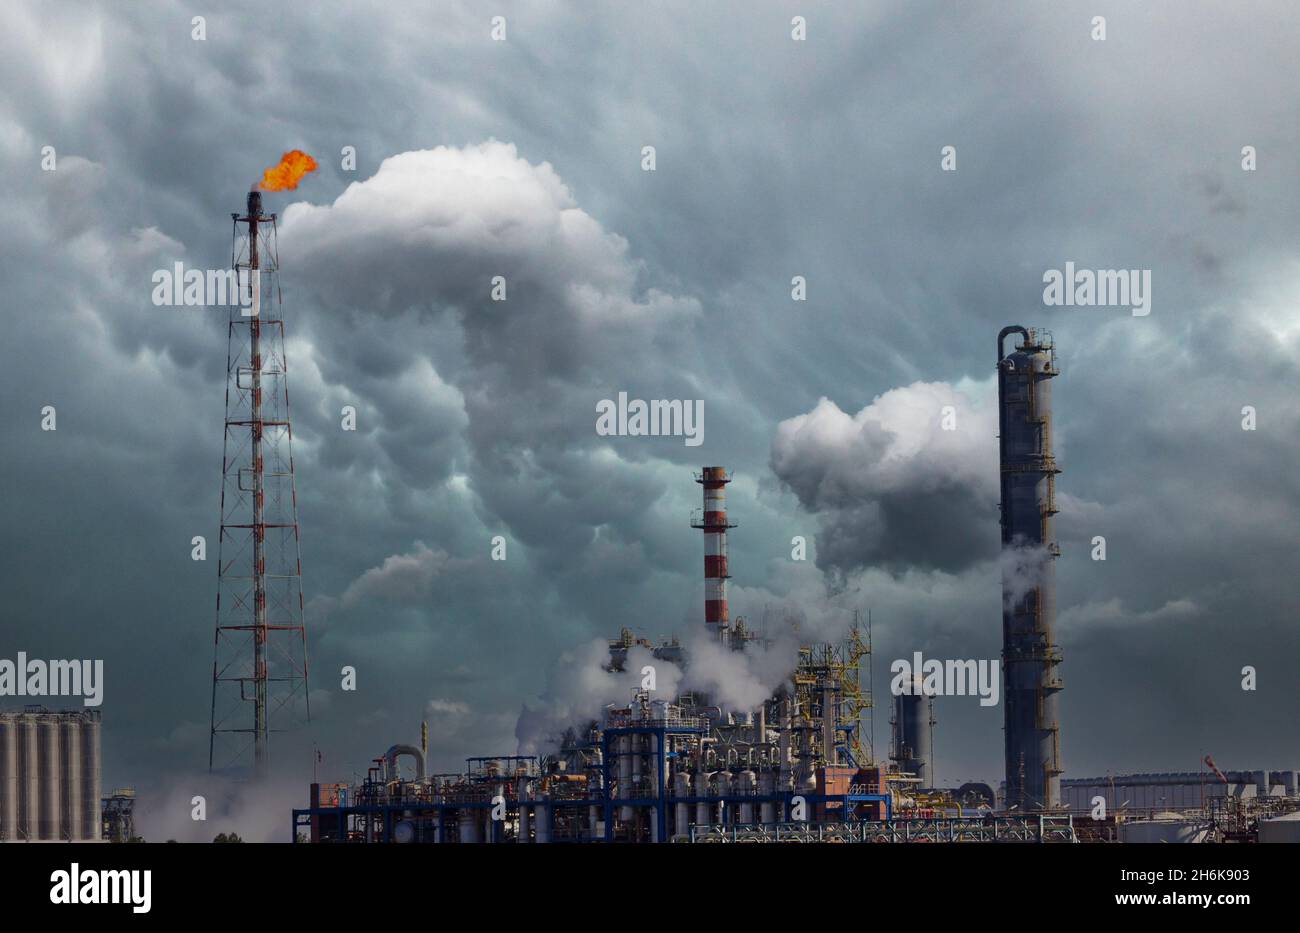 Fuego de una antorcha de gas y humo en la industria química, la contaminación y el calentamiento global Foto de stock